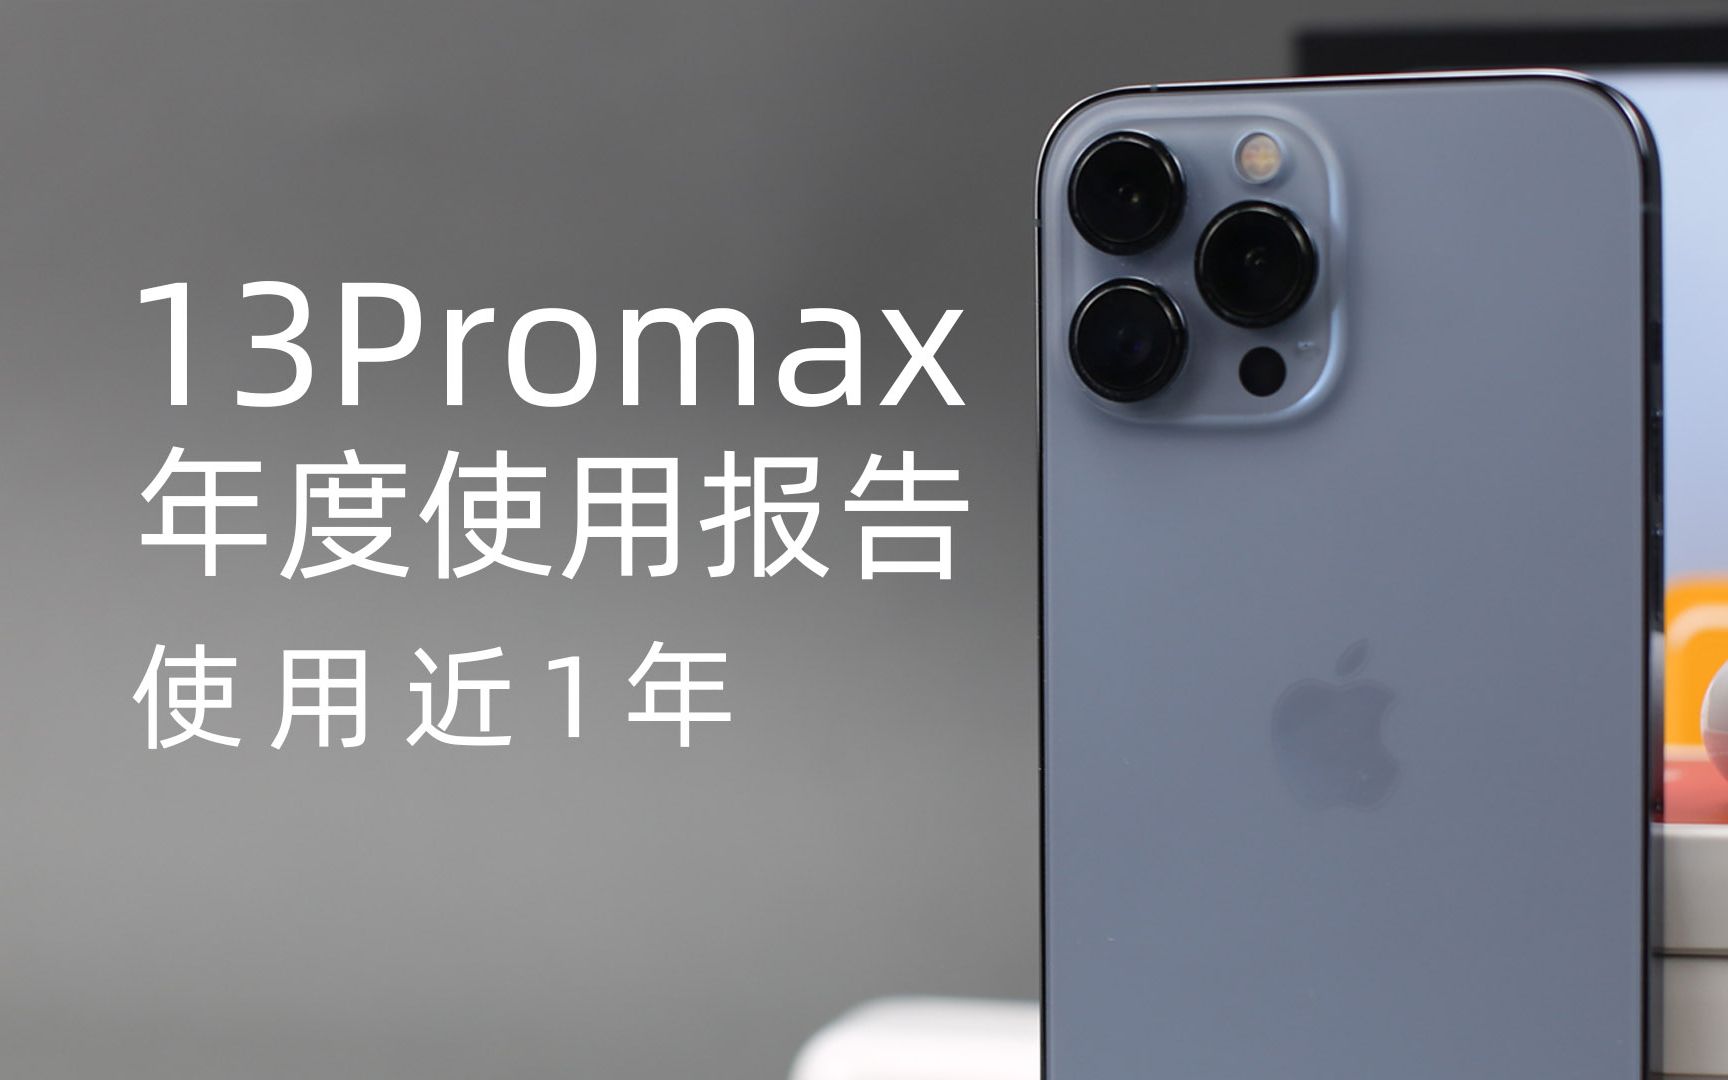 用一年的iPhone13promax我算是玩明白了，详细介绍了影像系统和操作技巧等，想升级13的可以参考这个视频